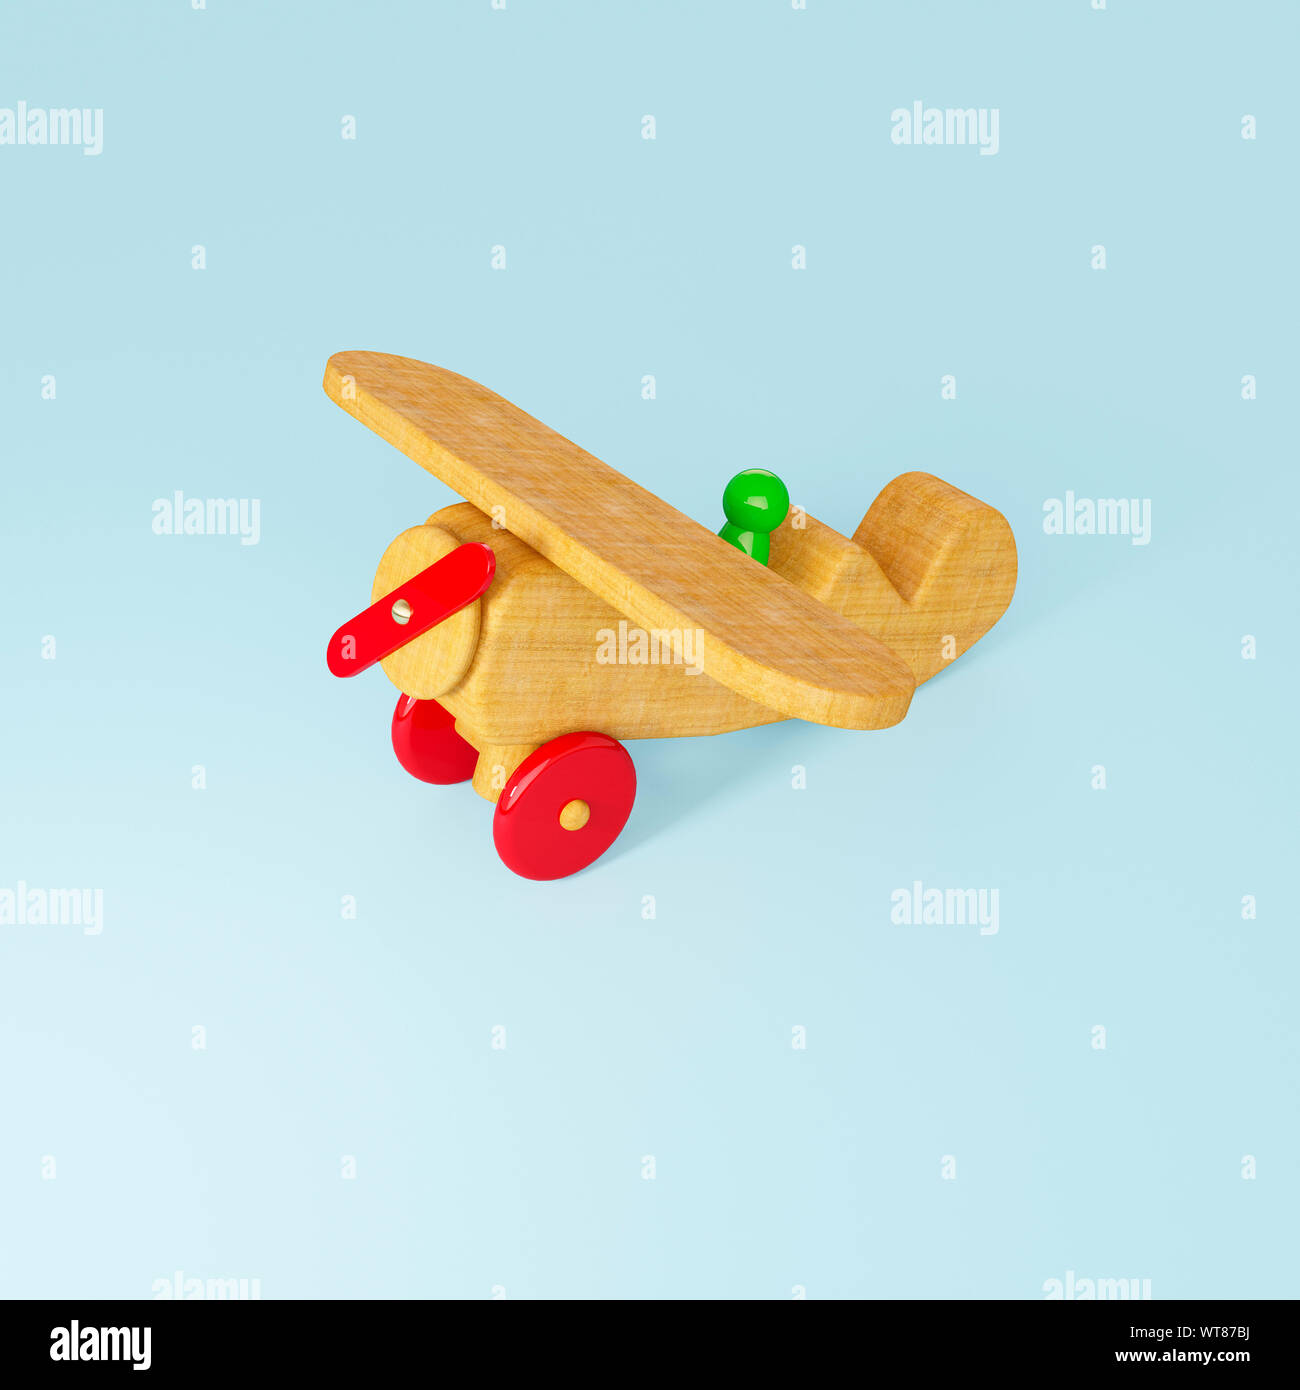 Juguetes de madera para niños, un juguete de madera y piloto de avión Foto de stock